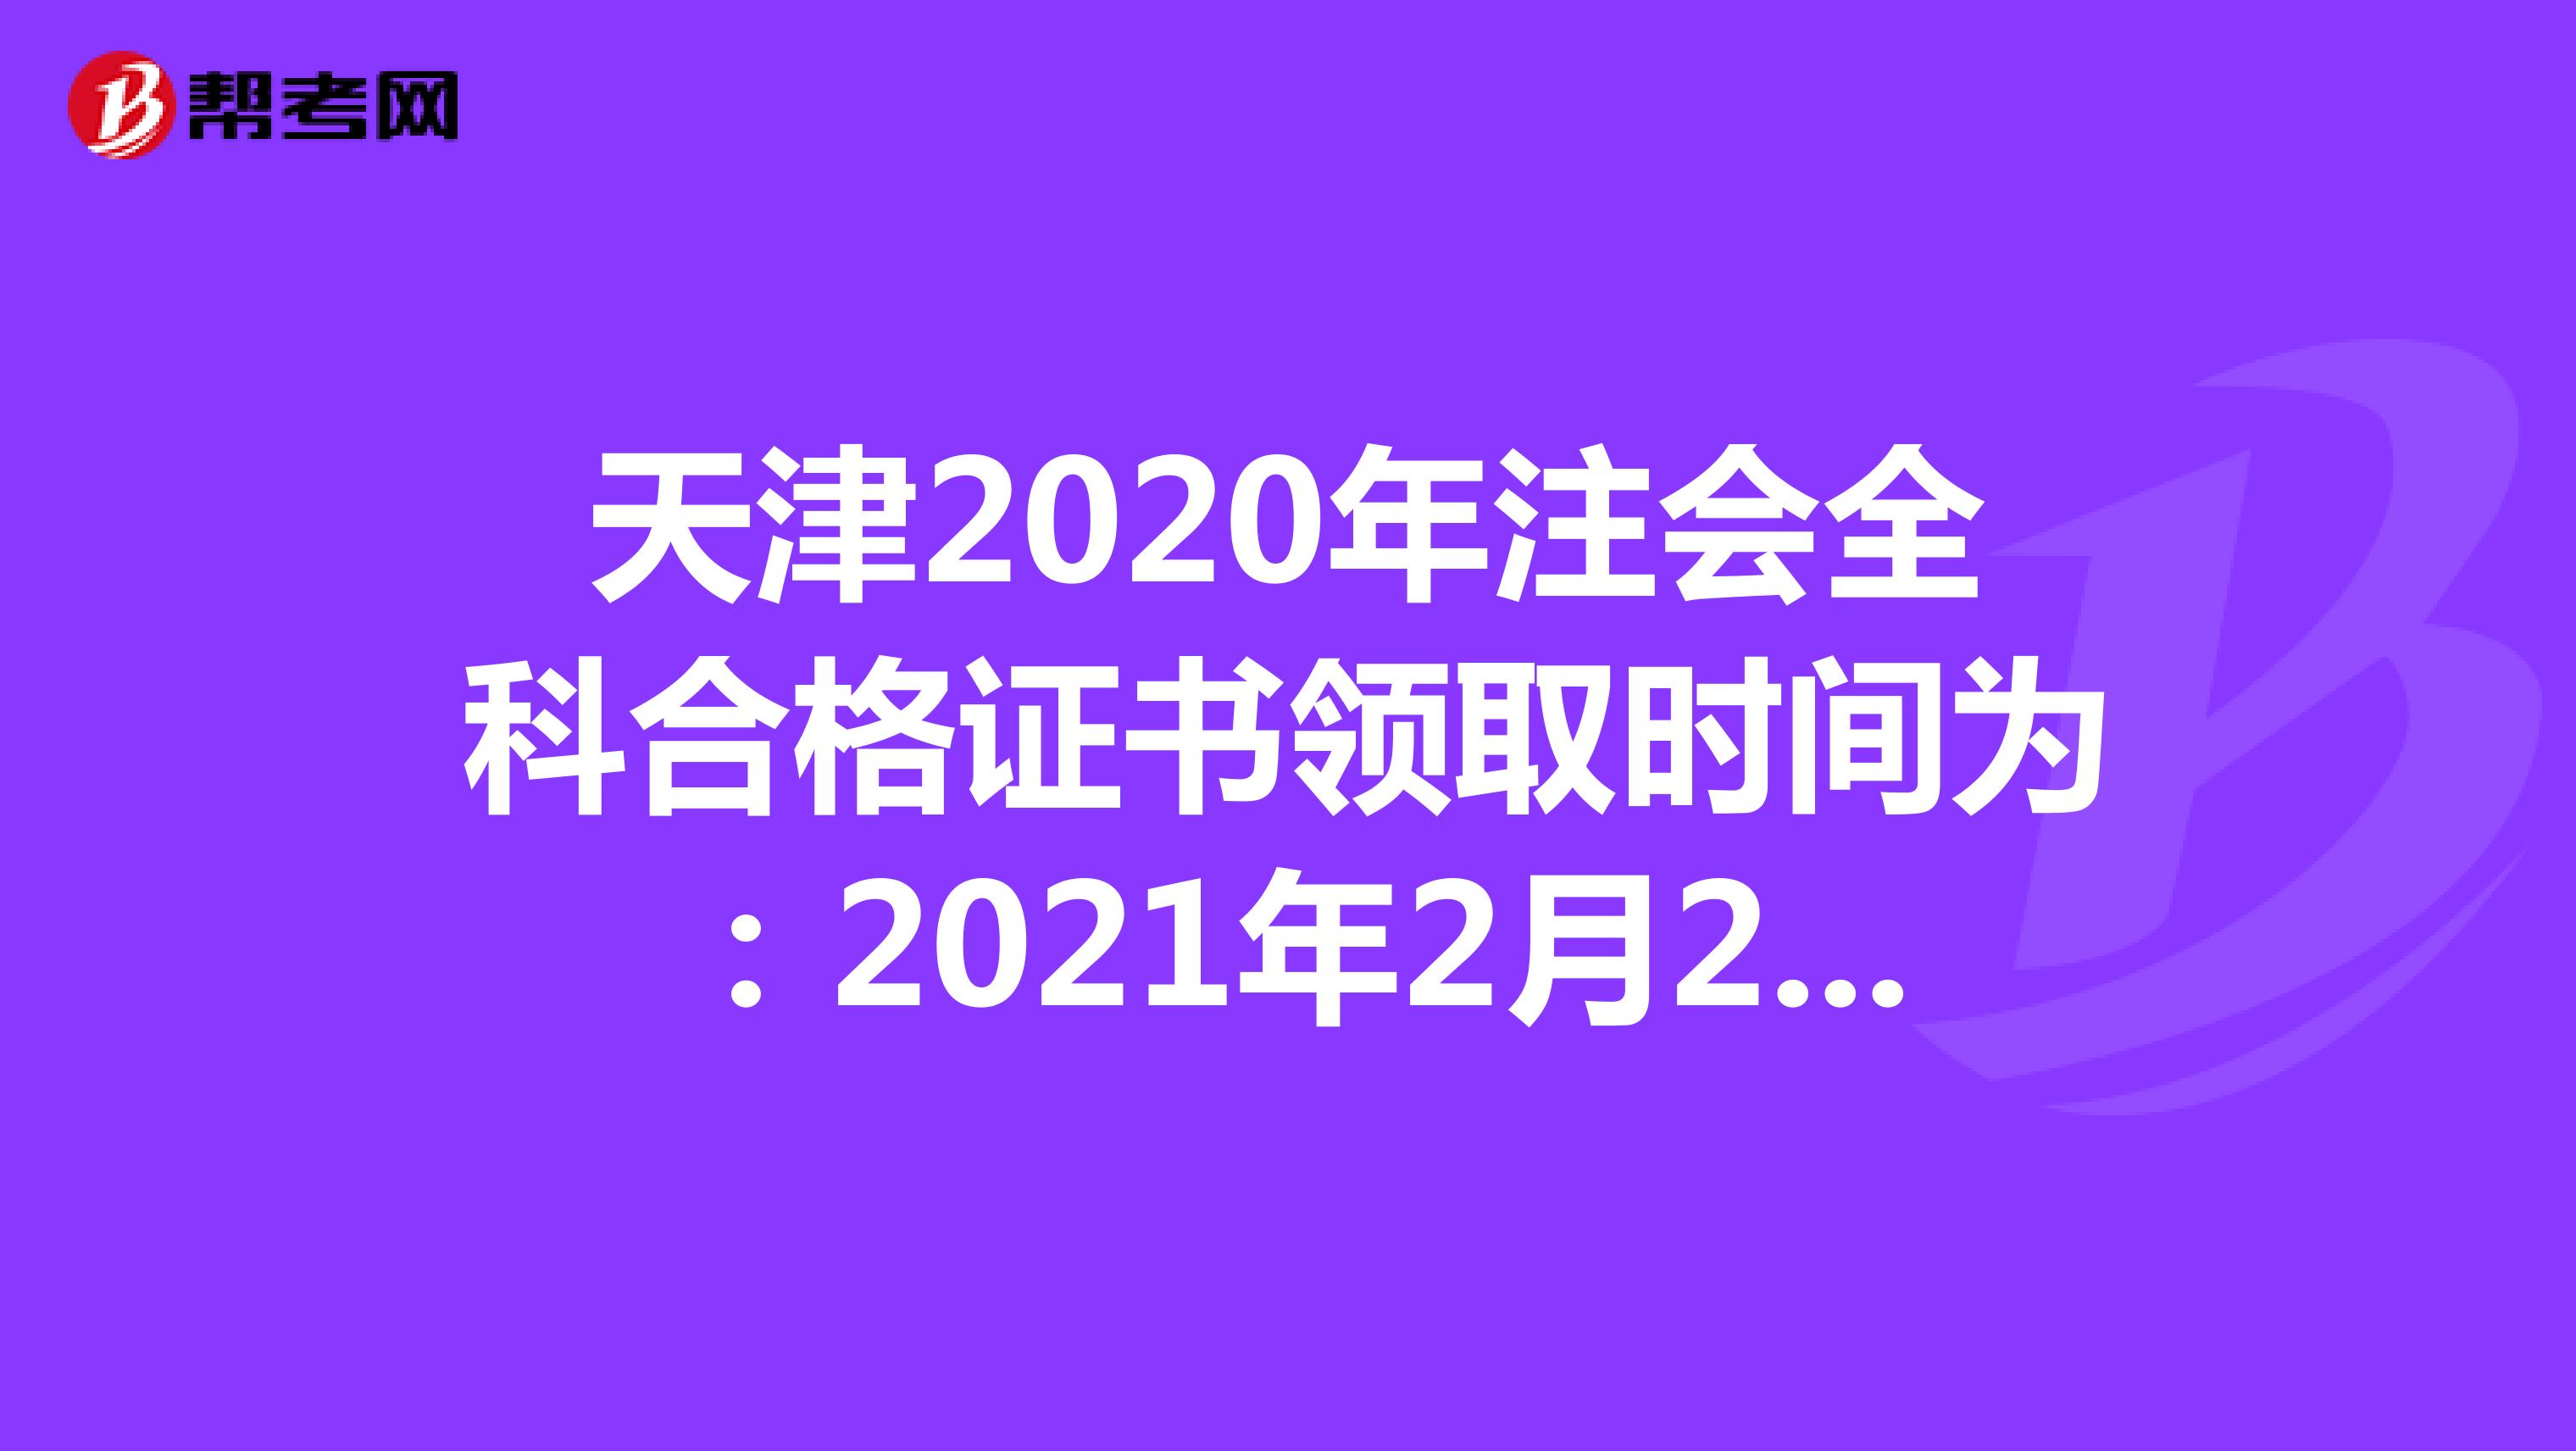 天津2020年注会全科合格证书领取时间为：2021年2月22日至3月5日 